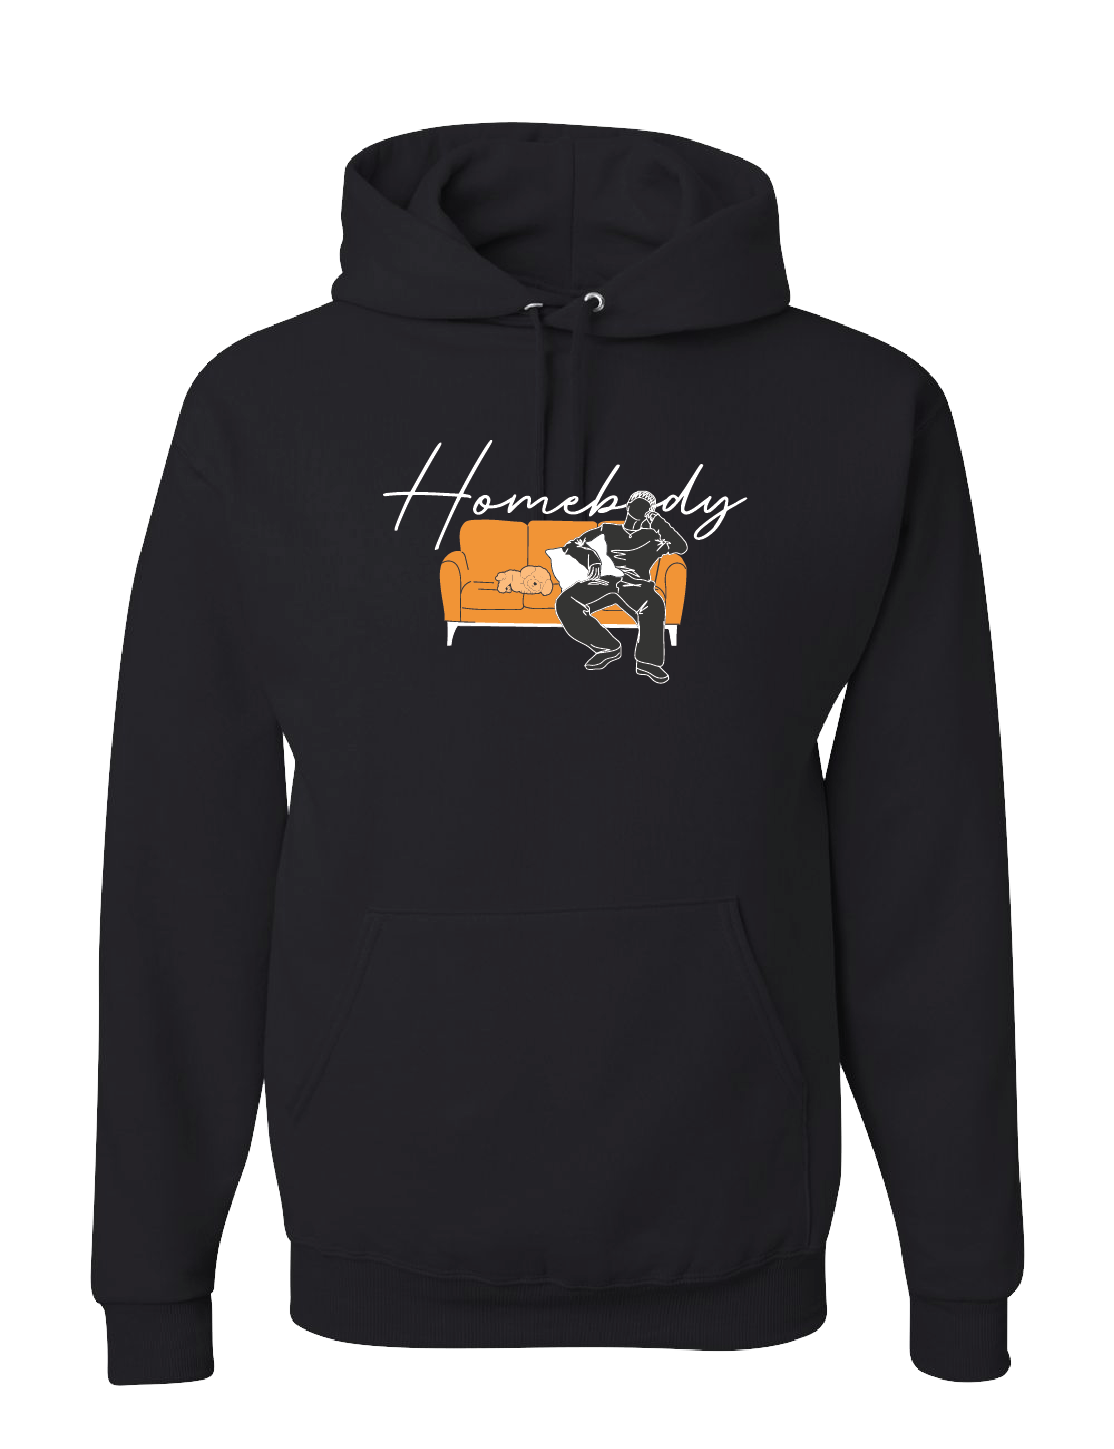 Hoodie - Homebody